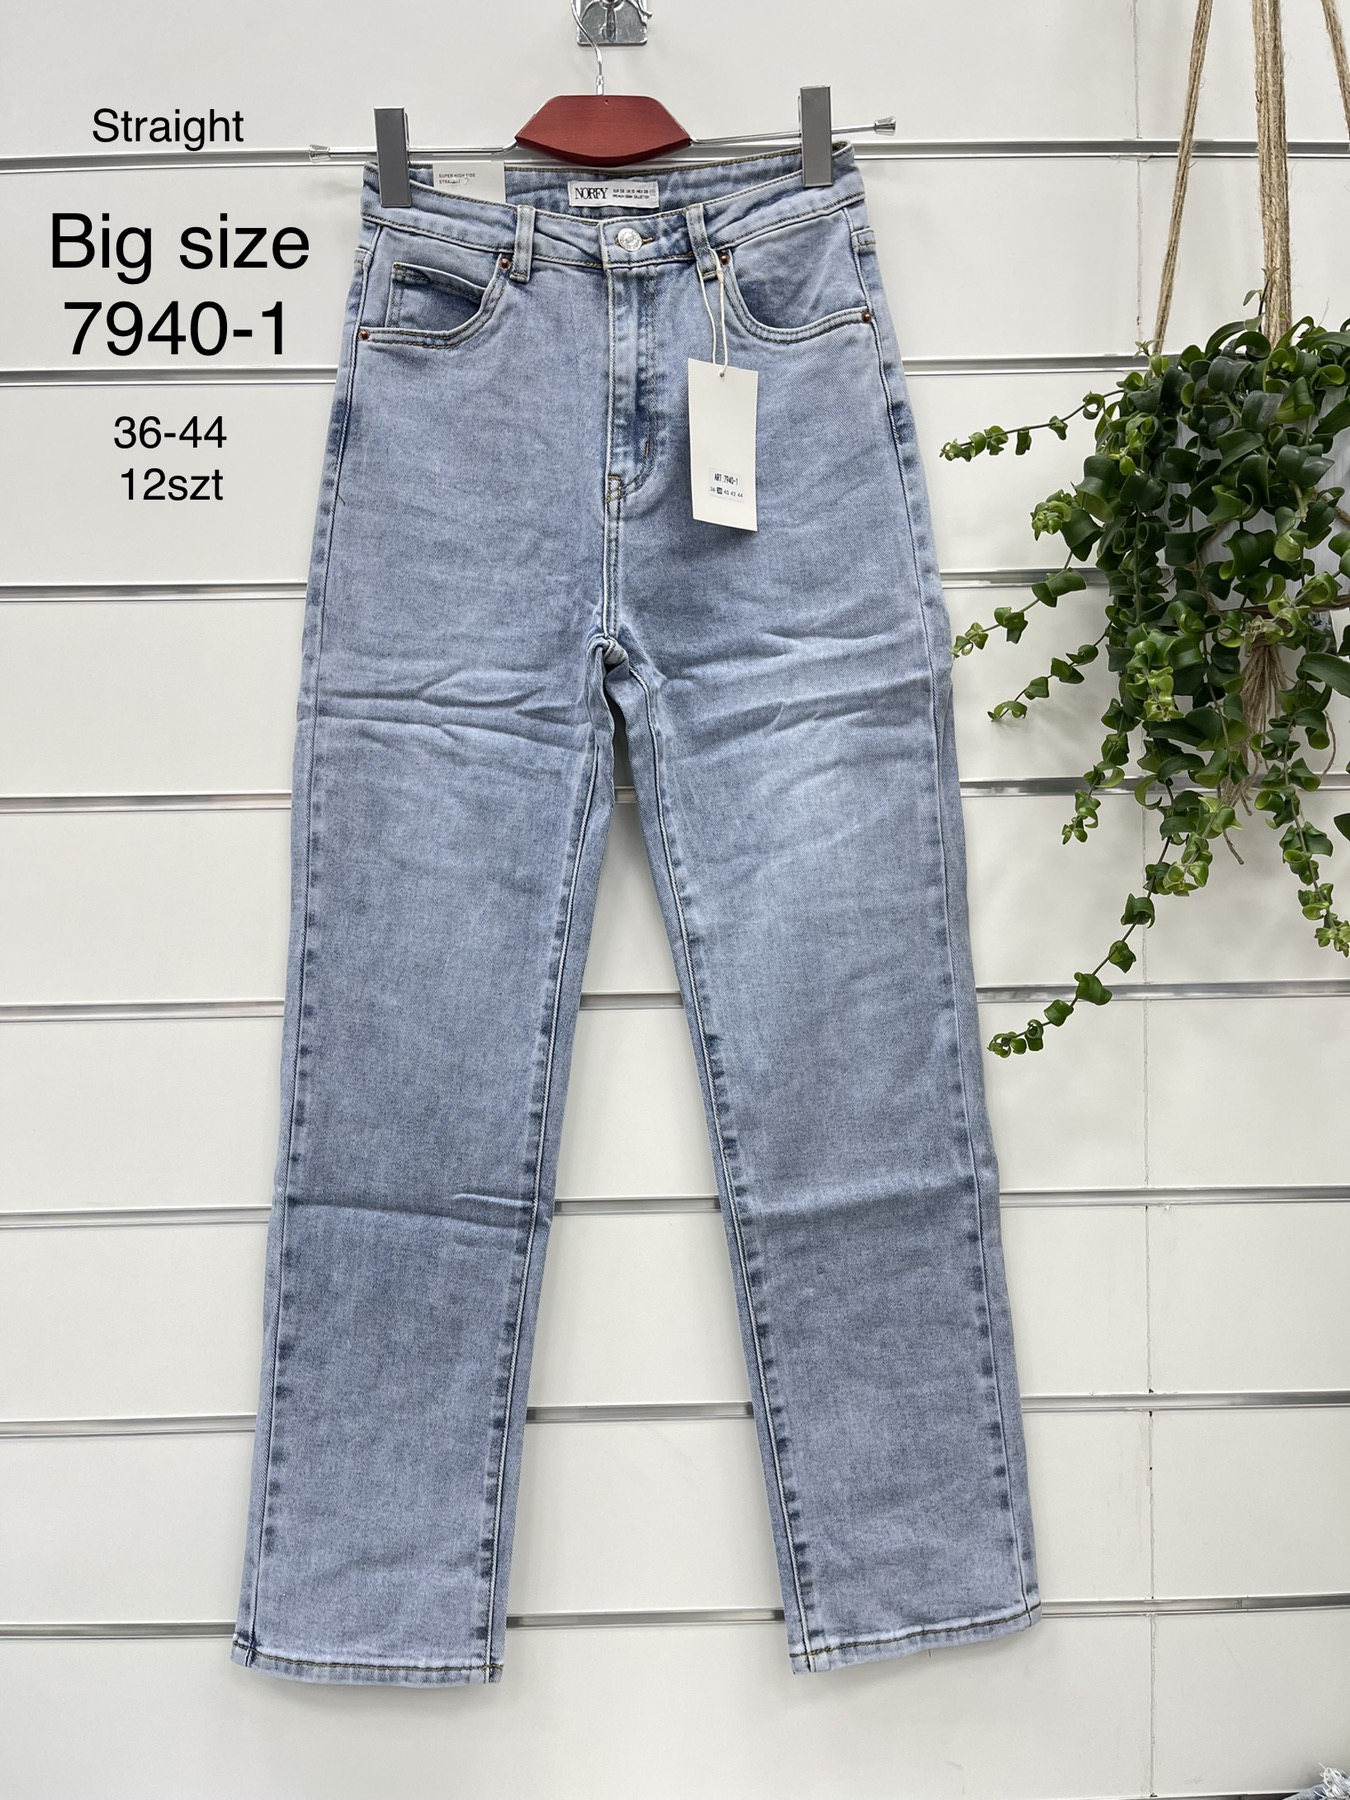 Spodnie damskie jeans Roz  36-44.  1 kolor . Paczka 12szt